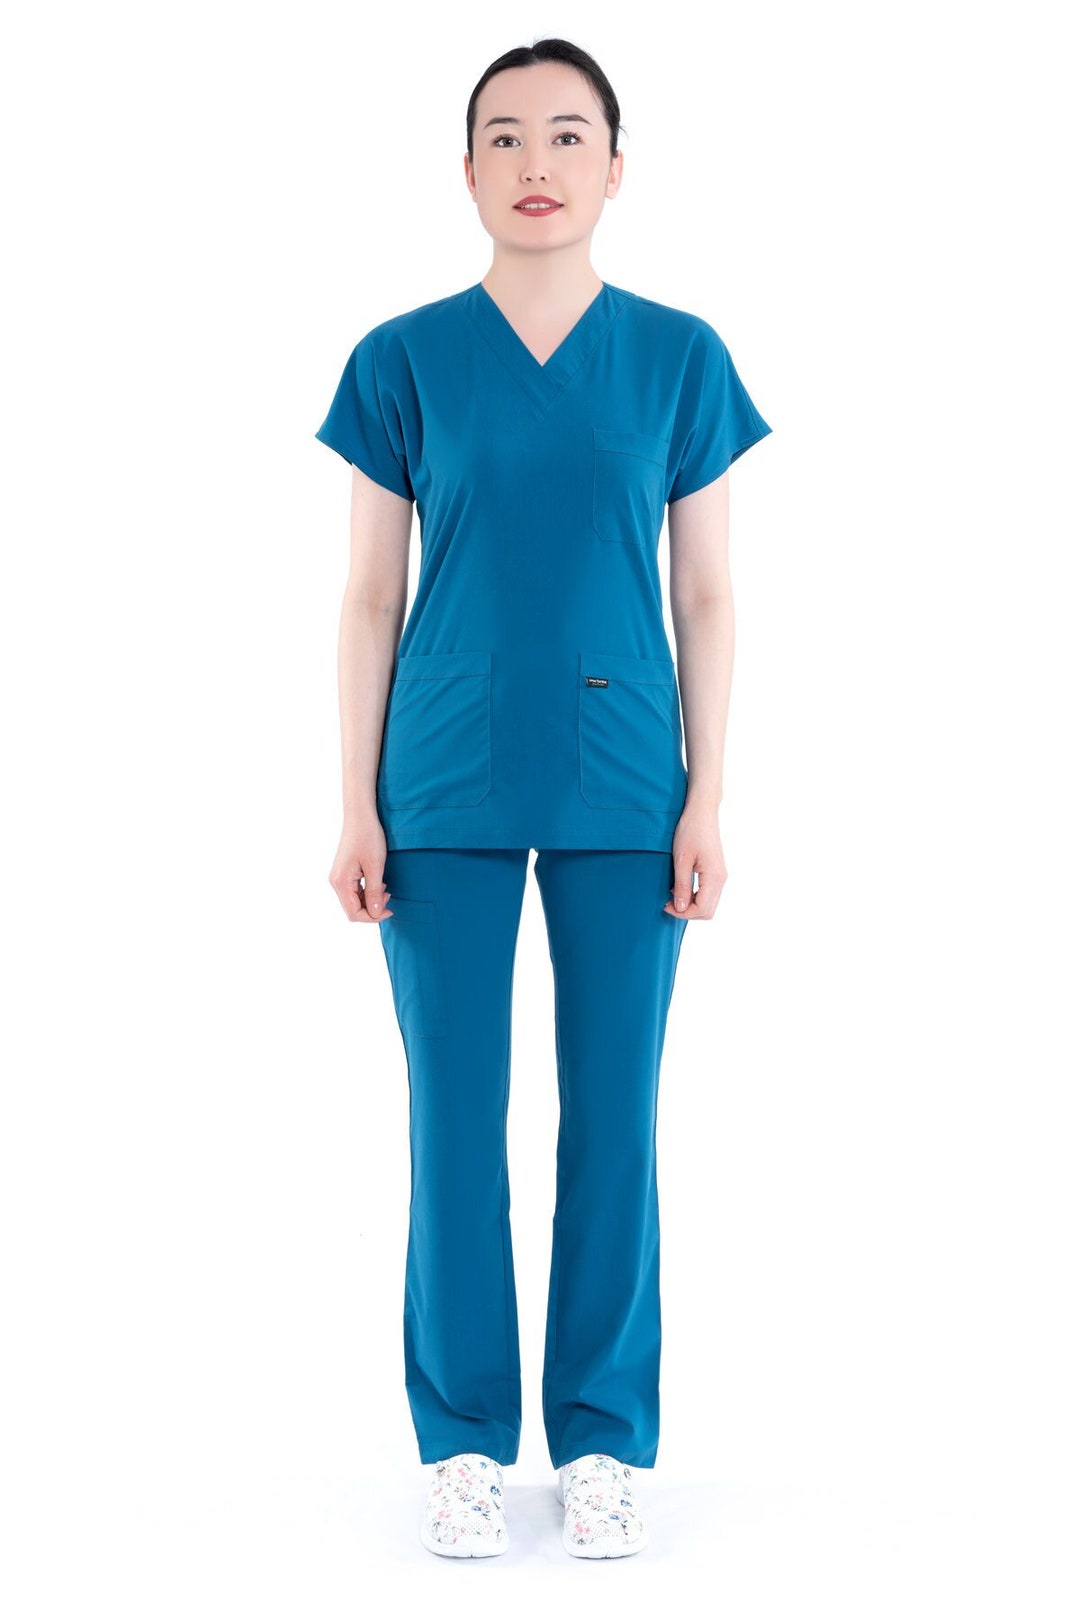 Personalized Blue Scrub Set, Nurse Uniform, Custom Scrub,medical Scrub ...